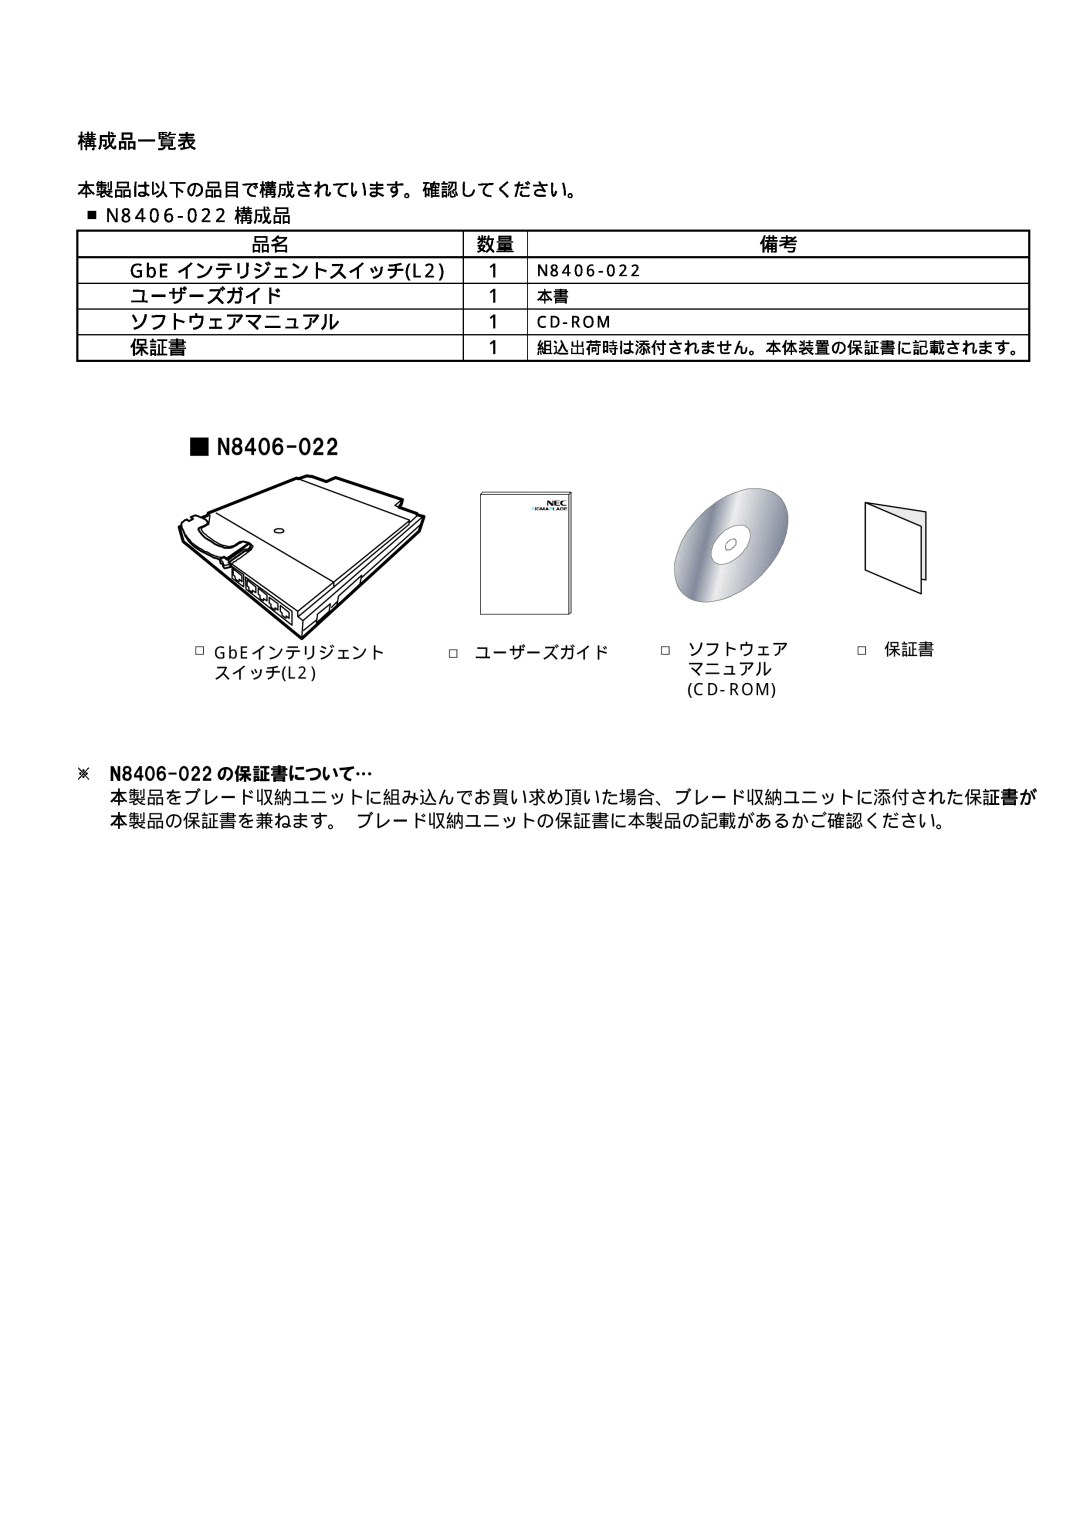 NEC N8406-022 manual 構成品一覧表 